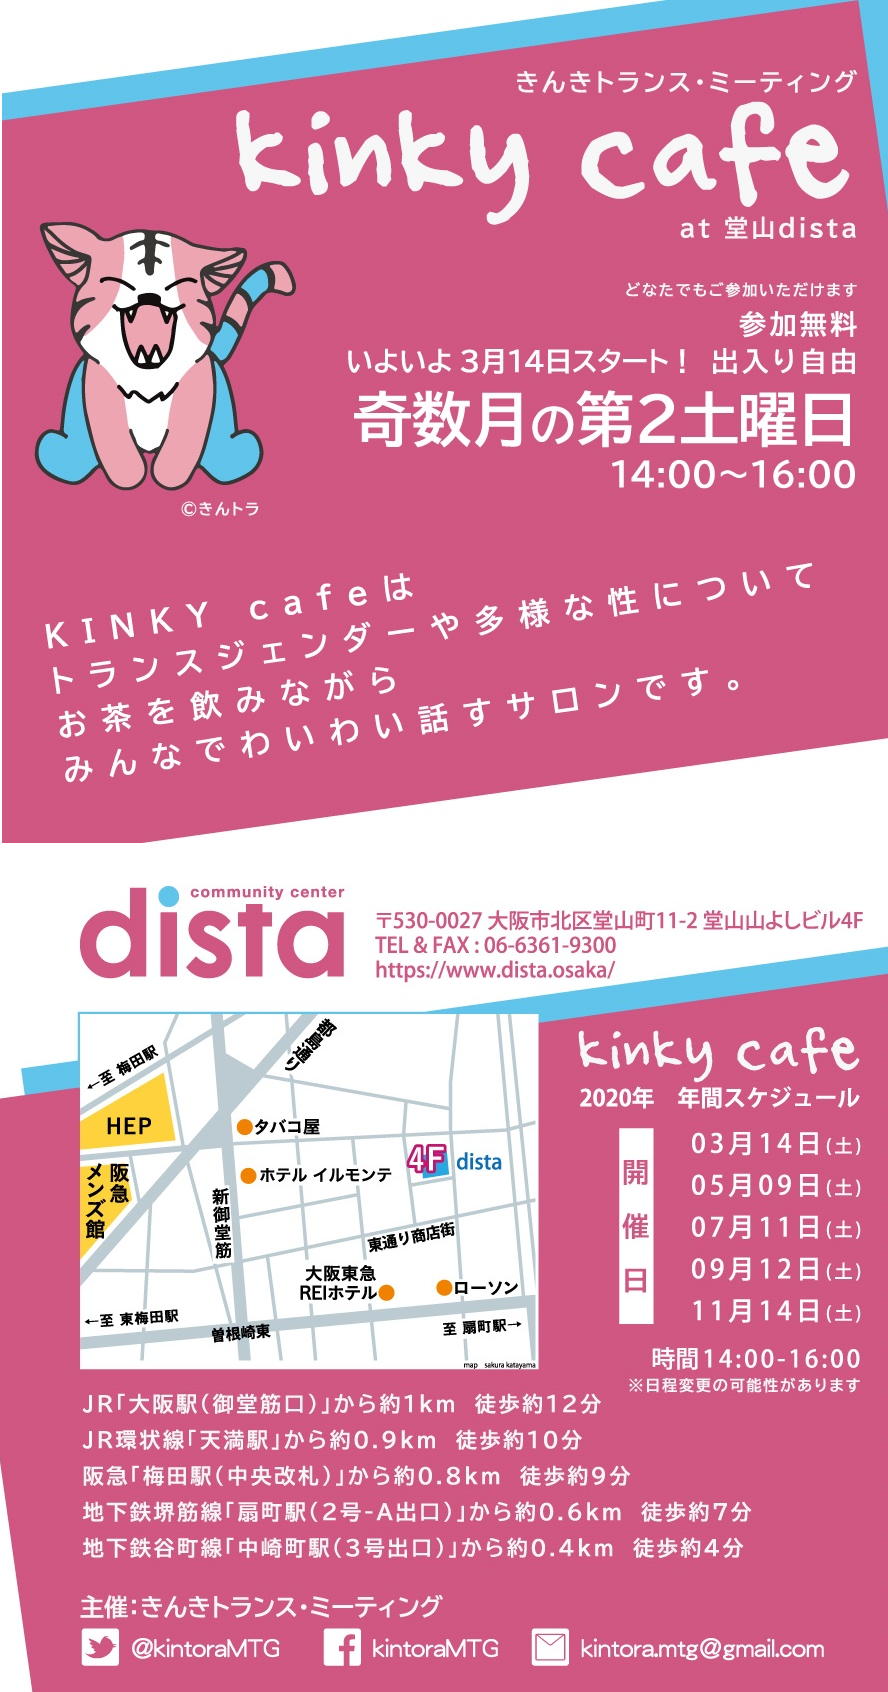 KINKY cafe